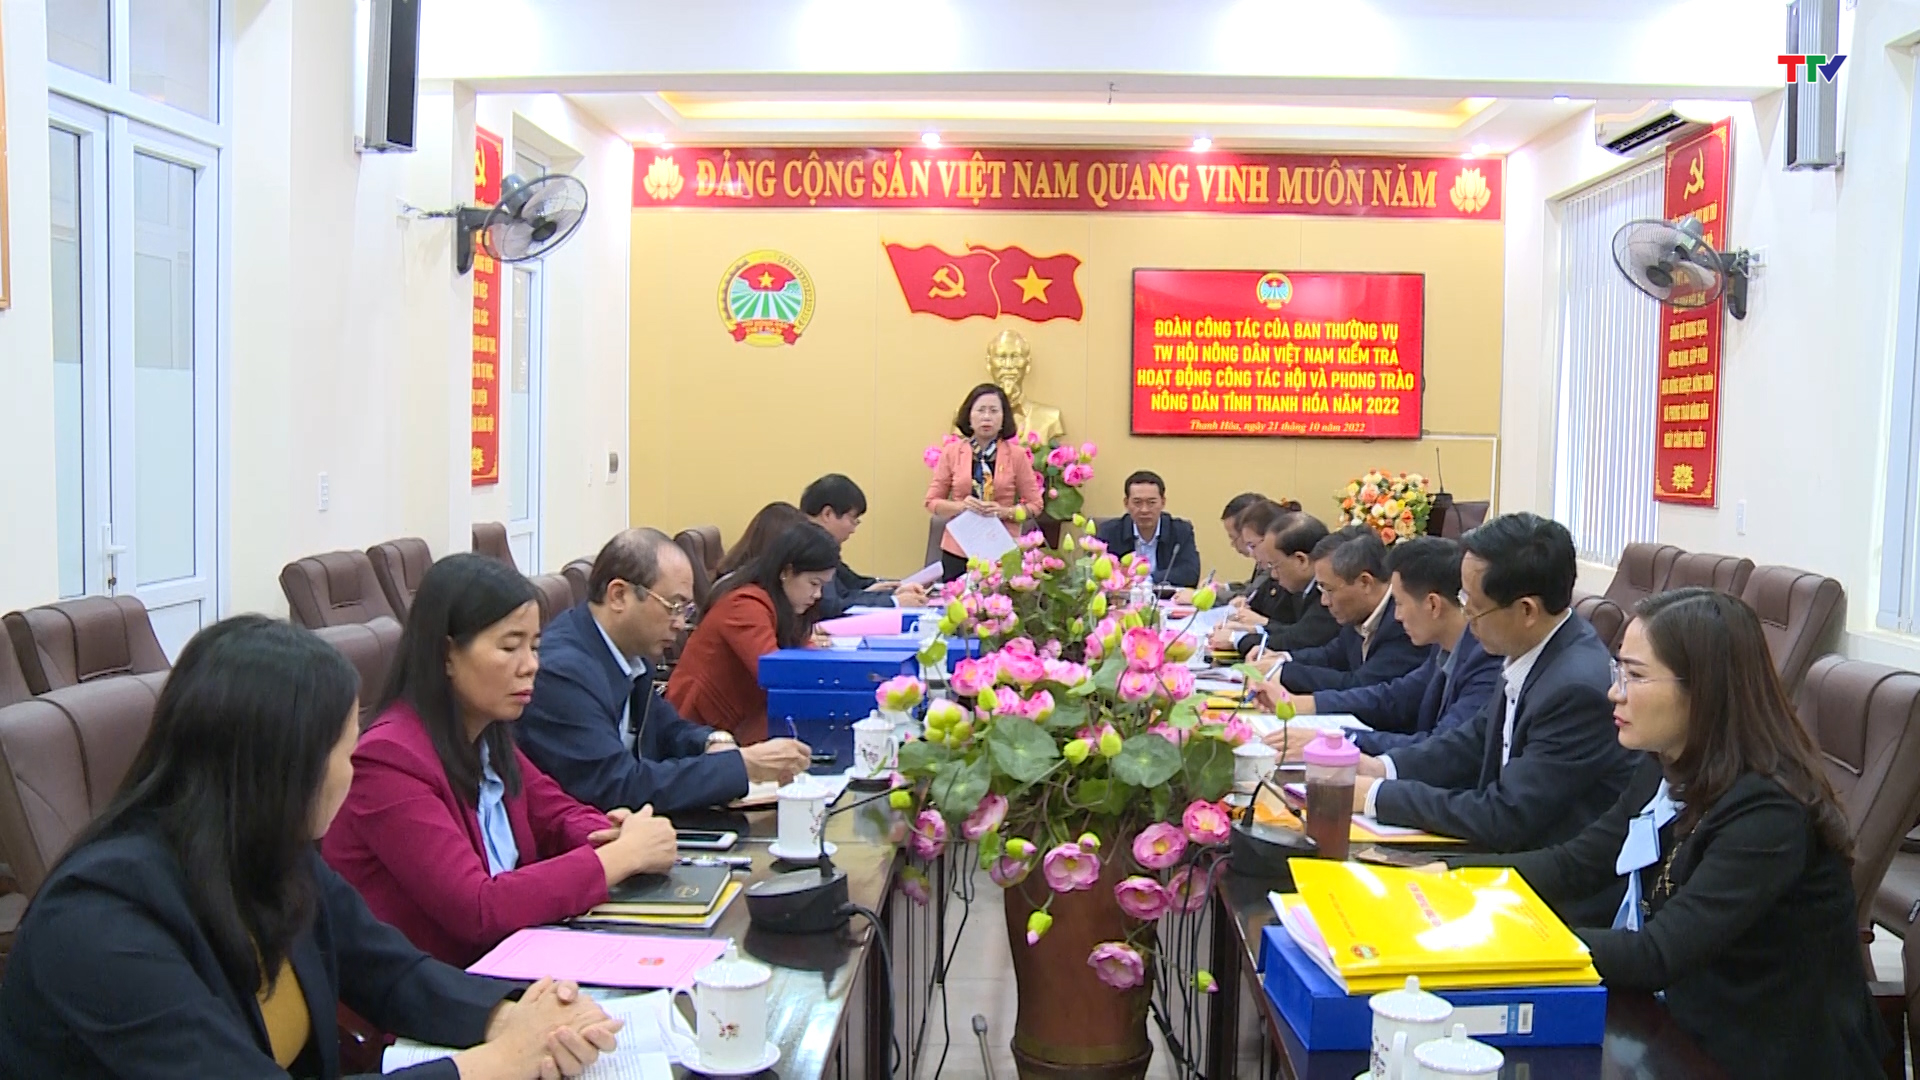 Phó Chủ tịch Hội Nông dân Việt Nam kiểm tra hoạt động công tác hội và phong trào nông dân tỉnh Thanh Hóa - Ảnh 3.